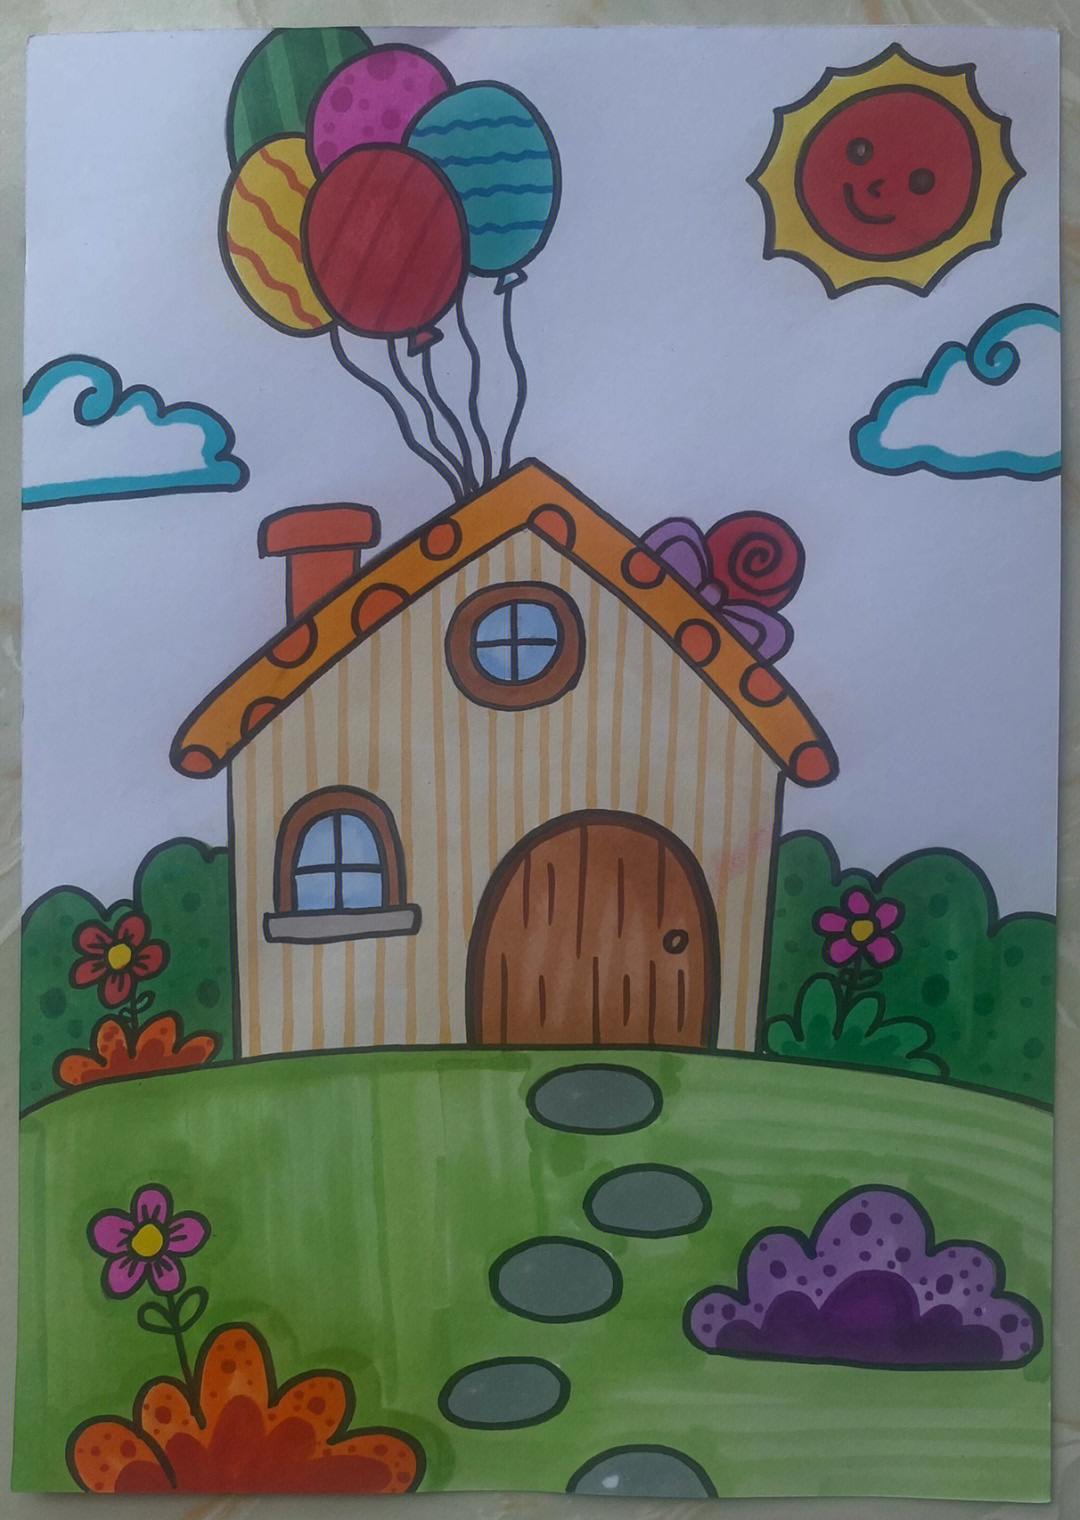 理想的房子儿童画图片